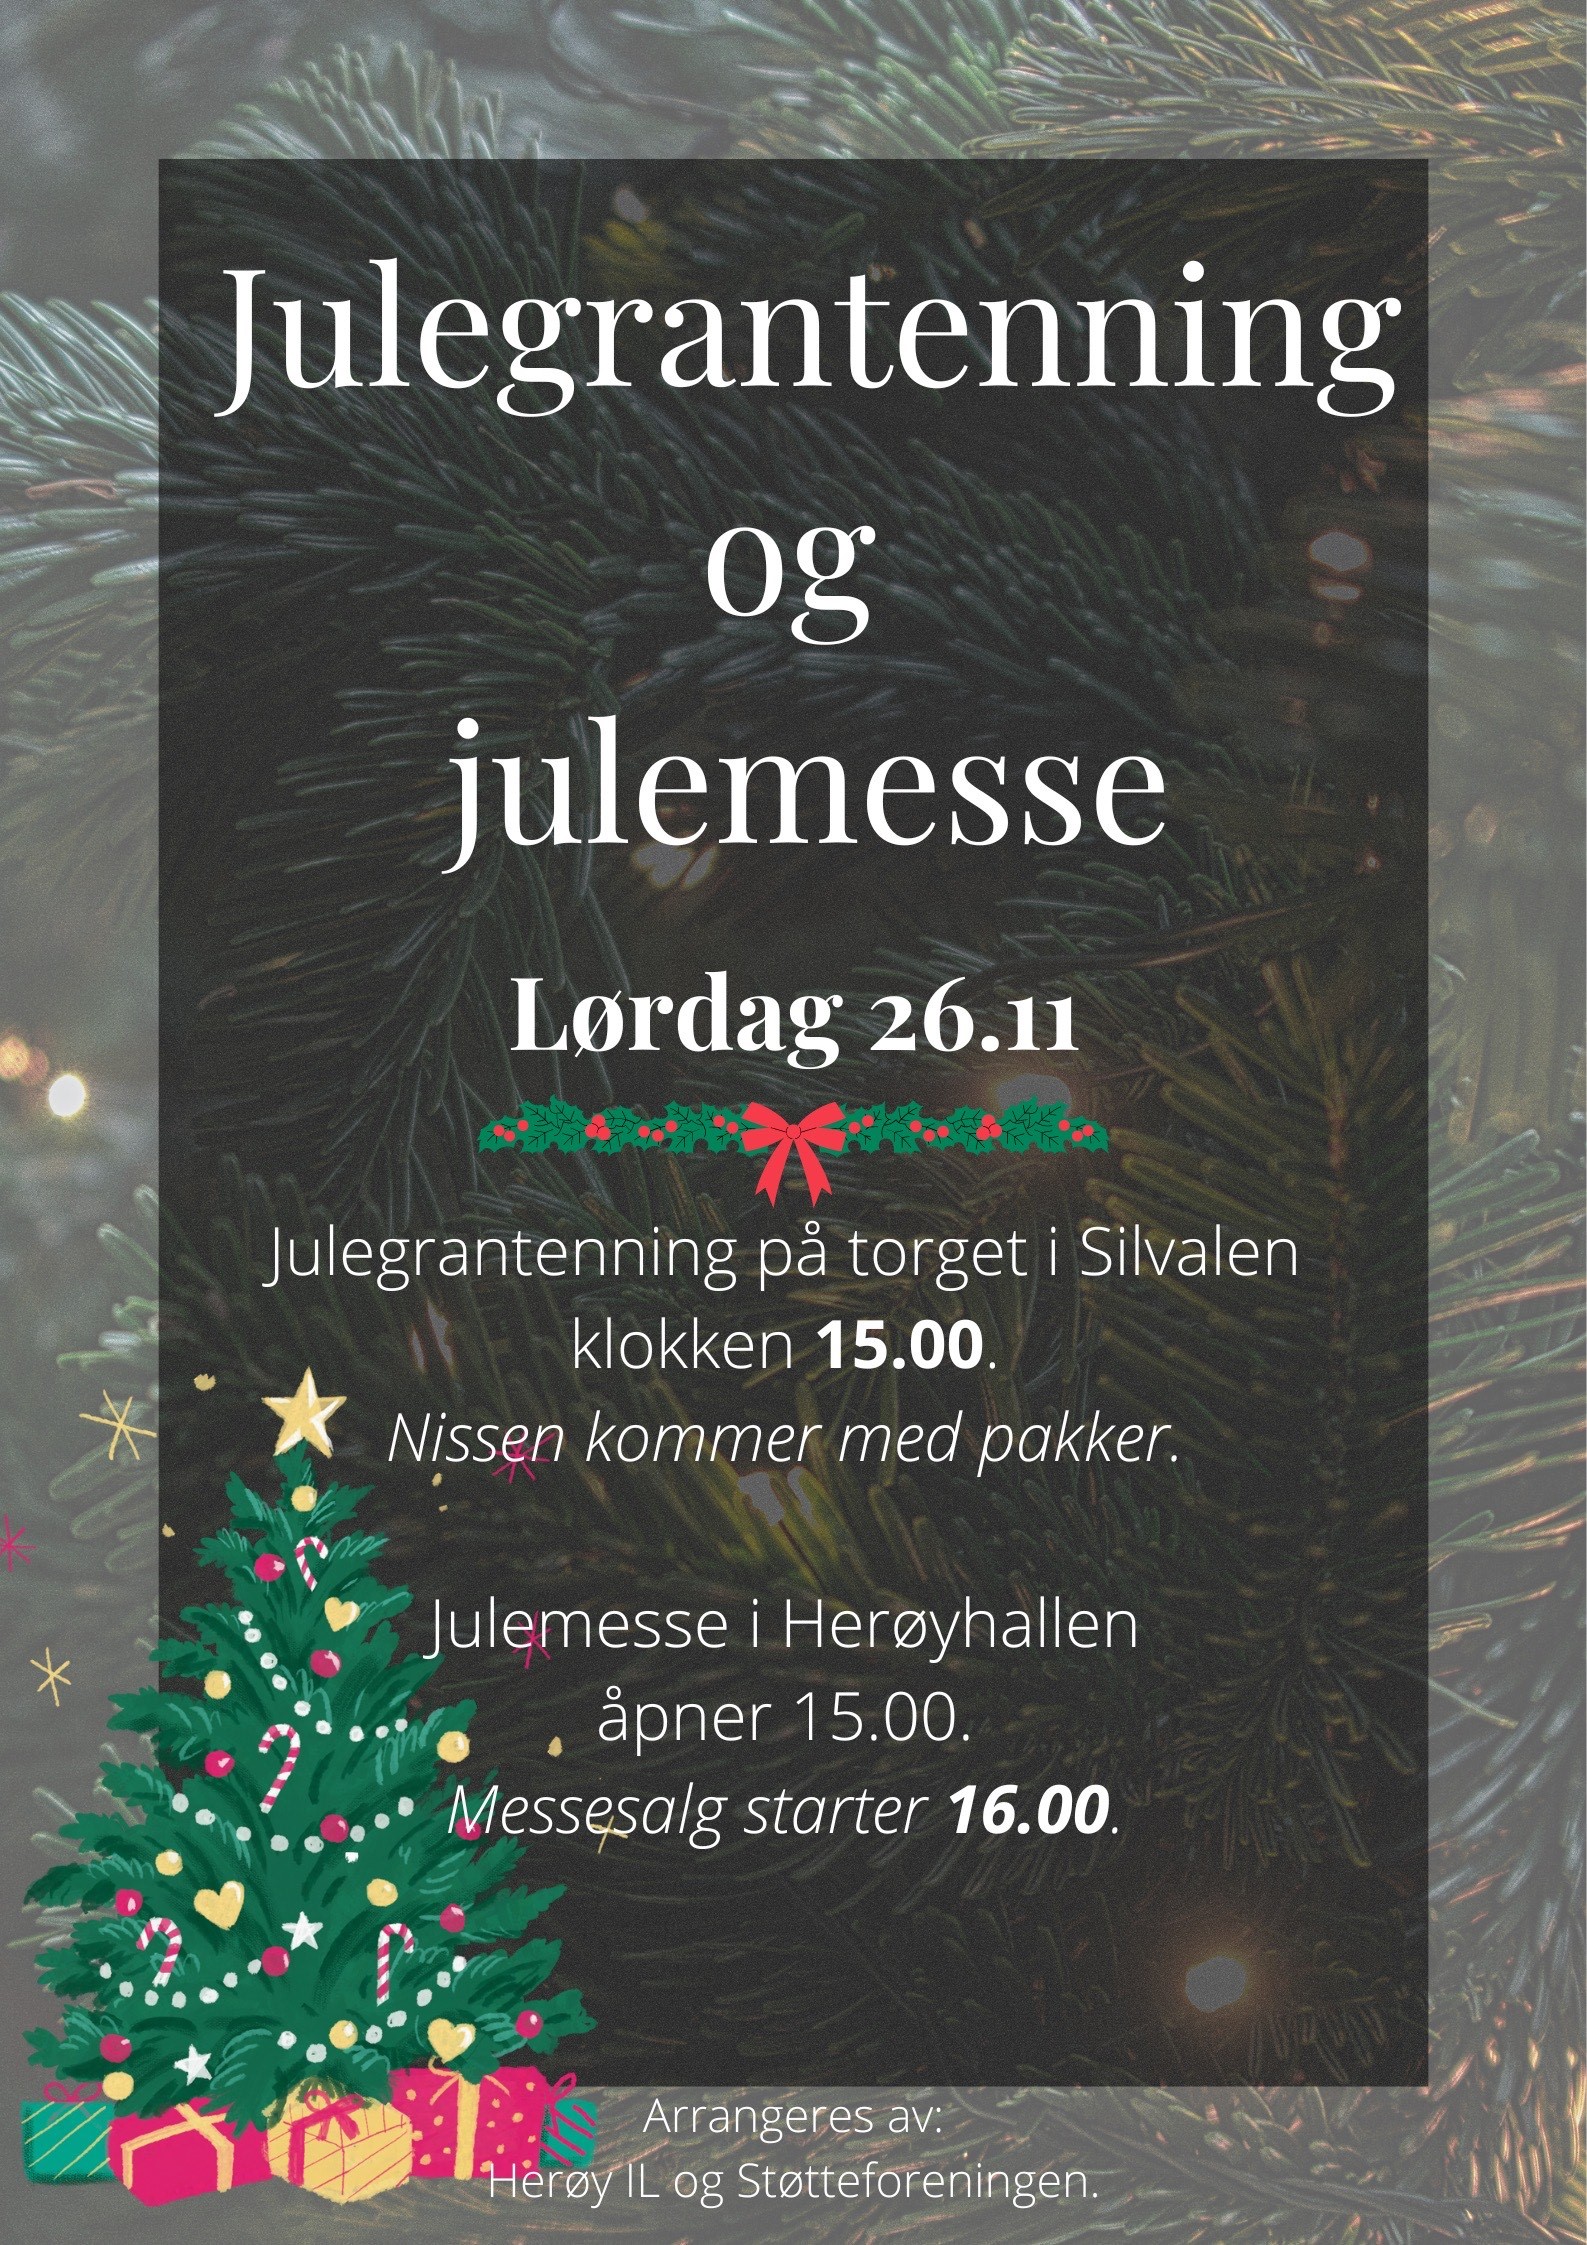 Julegrantenning og julemesse 2022.jpg